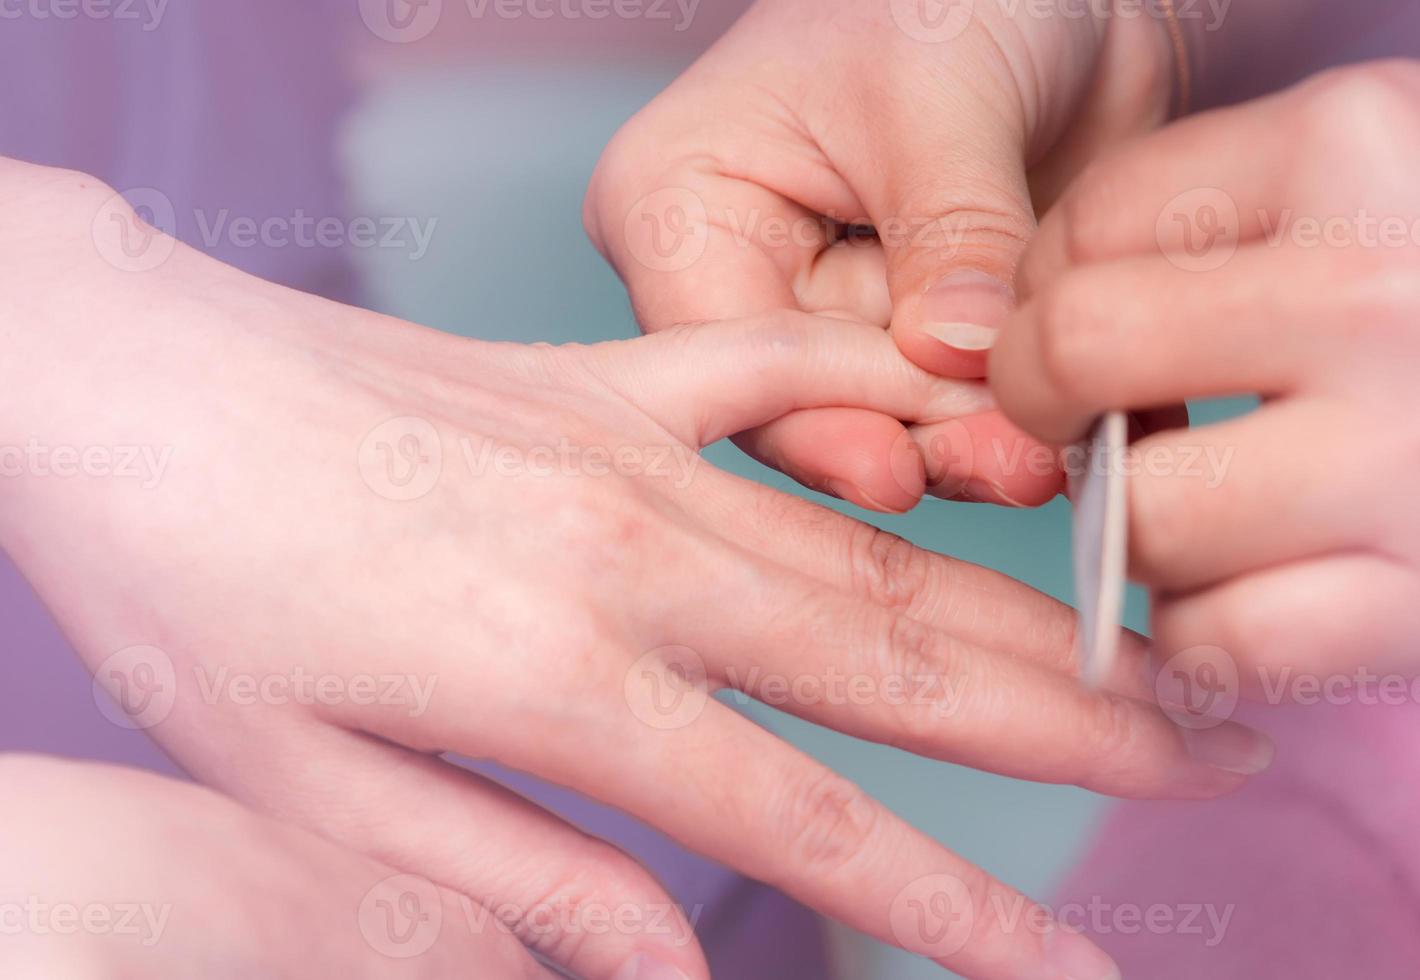 vrouw die vingernagel manicure service ontvangt door professionele manicure bij nagelsalon. schoonheidsspecialiste bestand nagel manicure bij nagel en spa salon. handverzorging en nagelbehandeling bij nagelsalon. foto